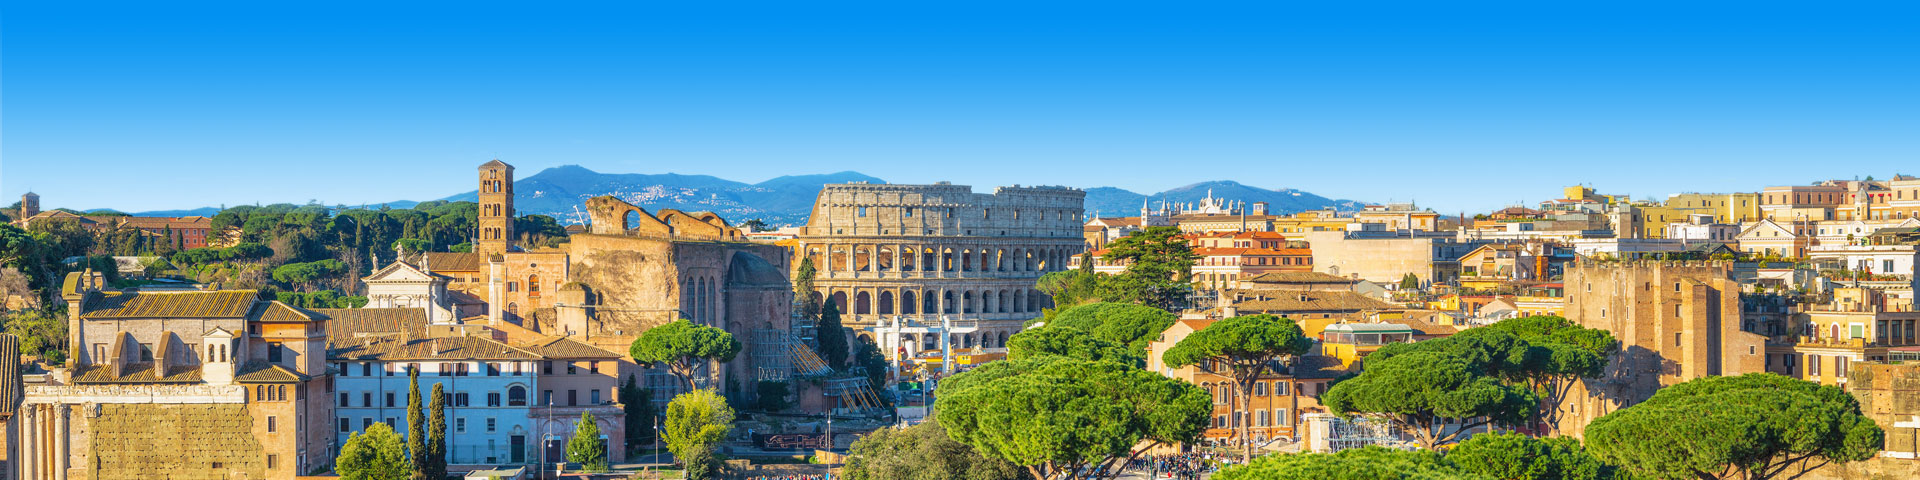 Rome vanuit de lucht met het Colosseum in het midden